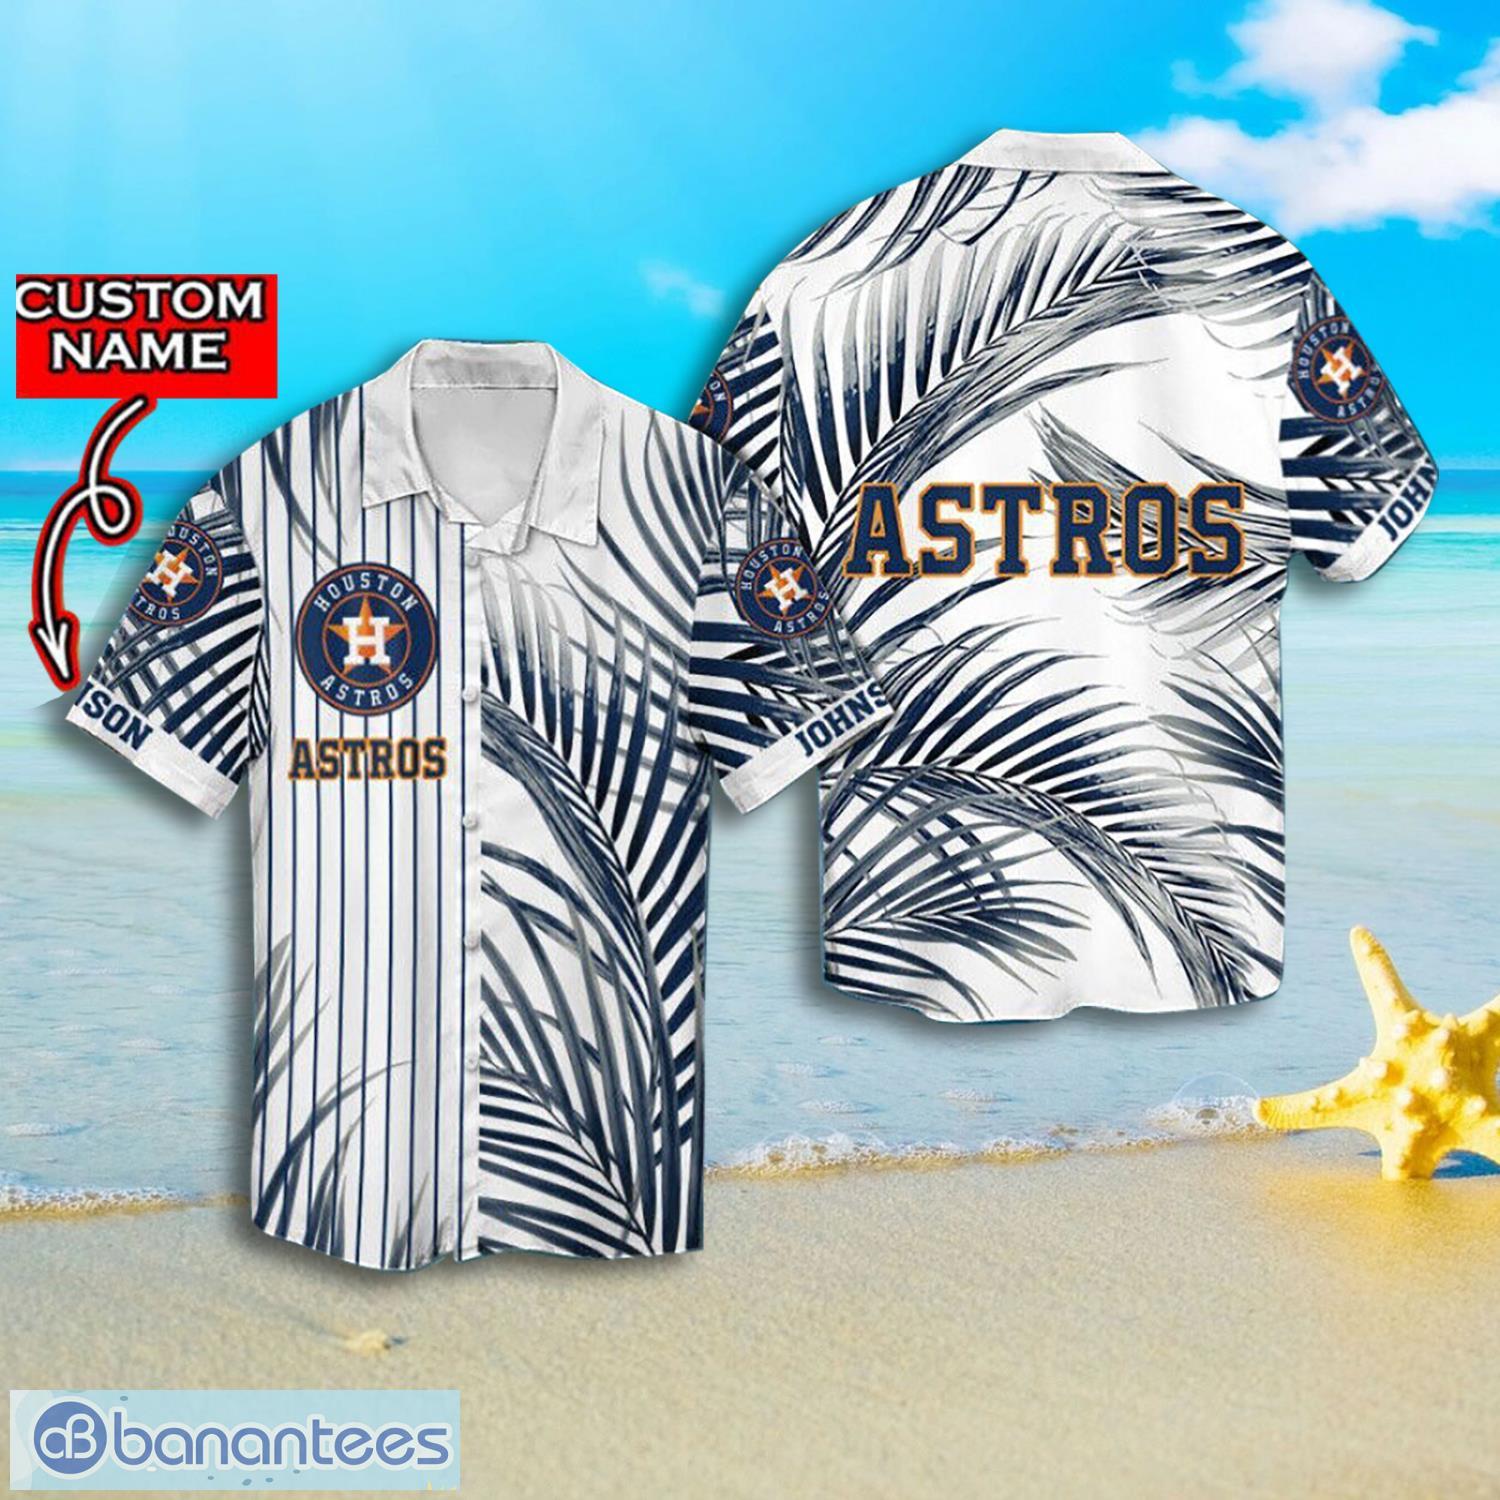 Houston Astros Custom Name & Number Baseball Shirt Best Gift For